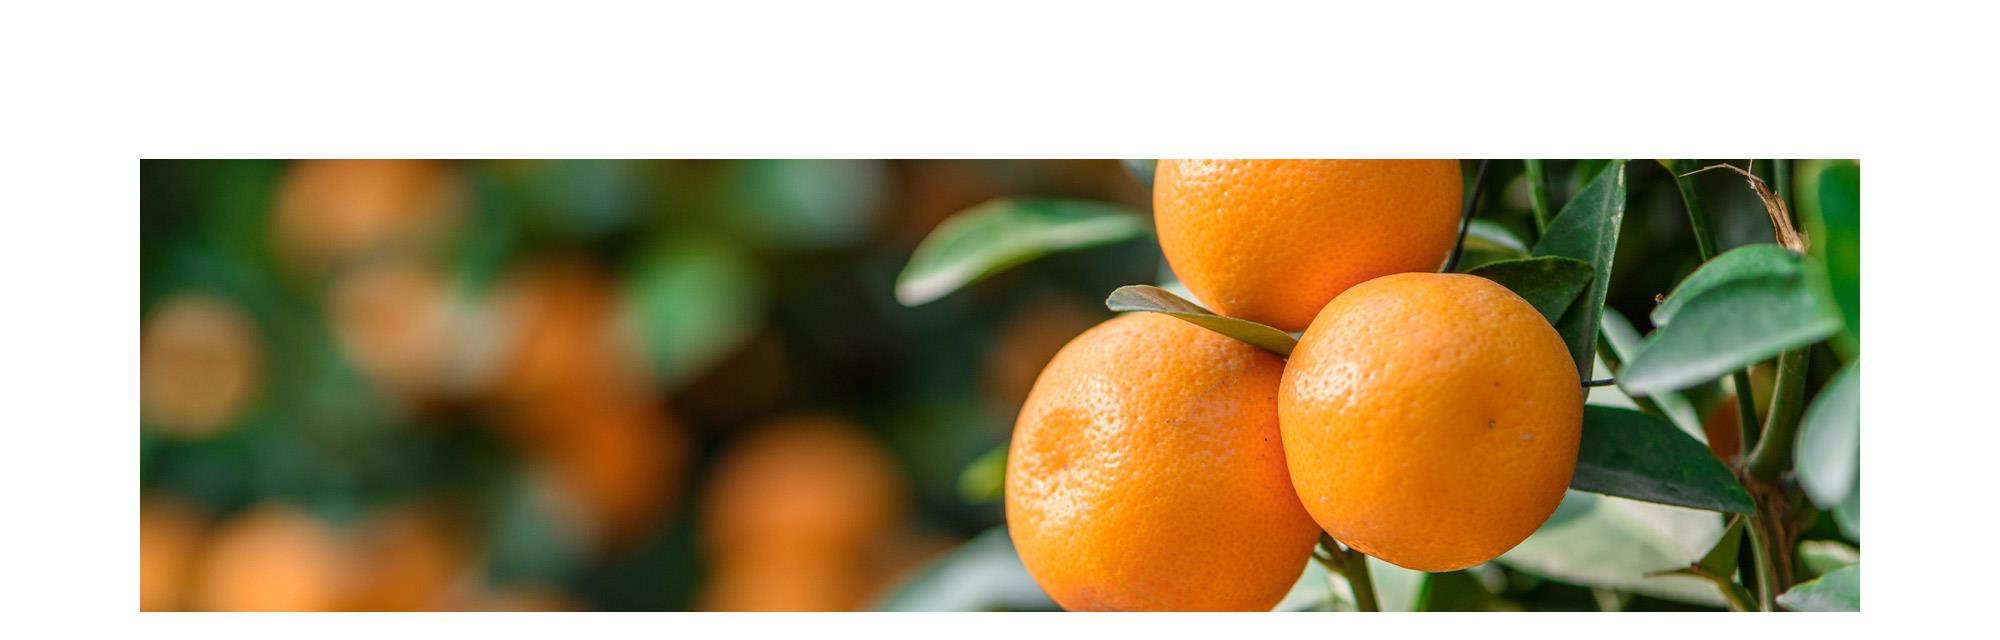 高品質 精油 グレープフルーツ オレンジ アロマオイル 柑橘系